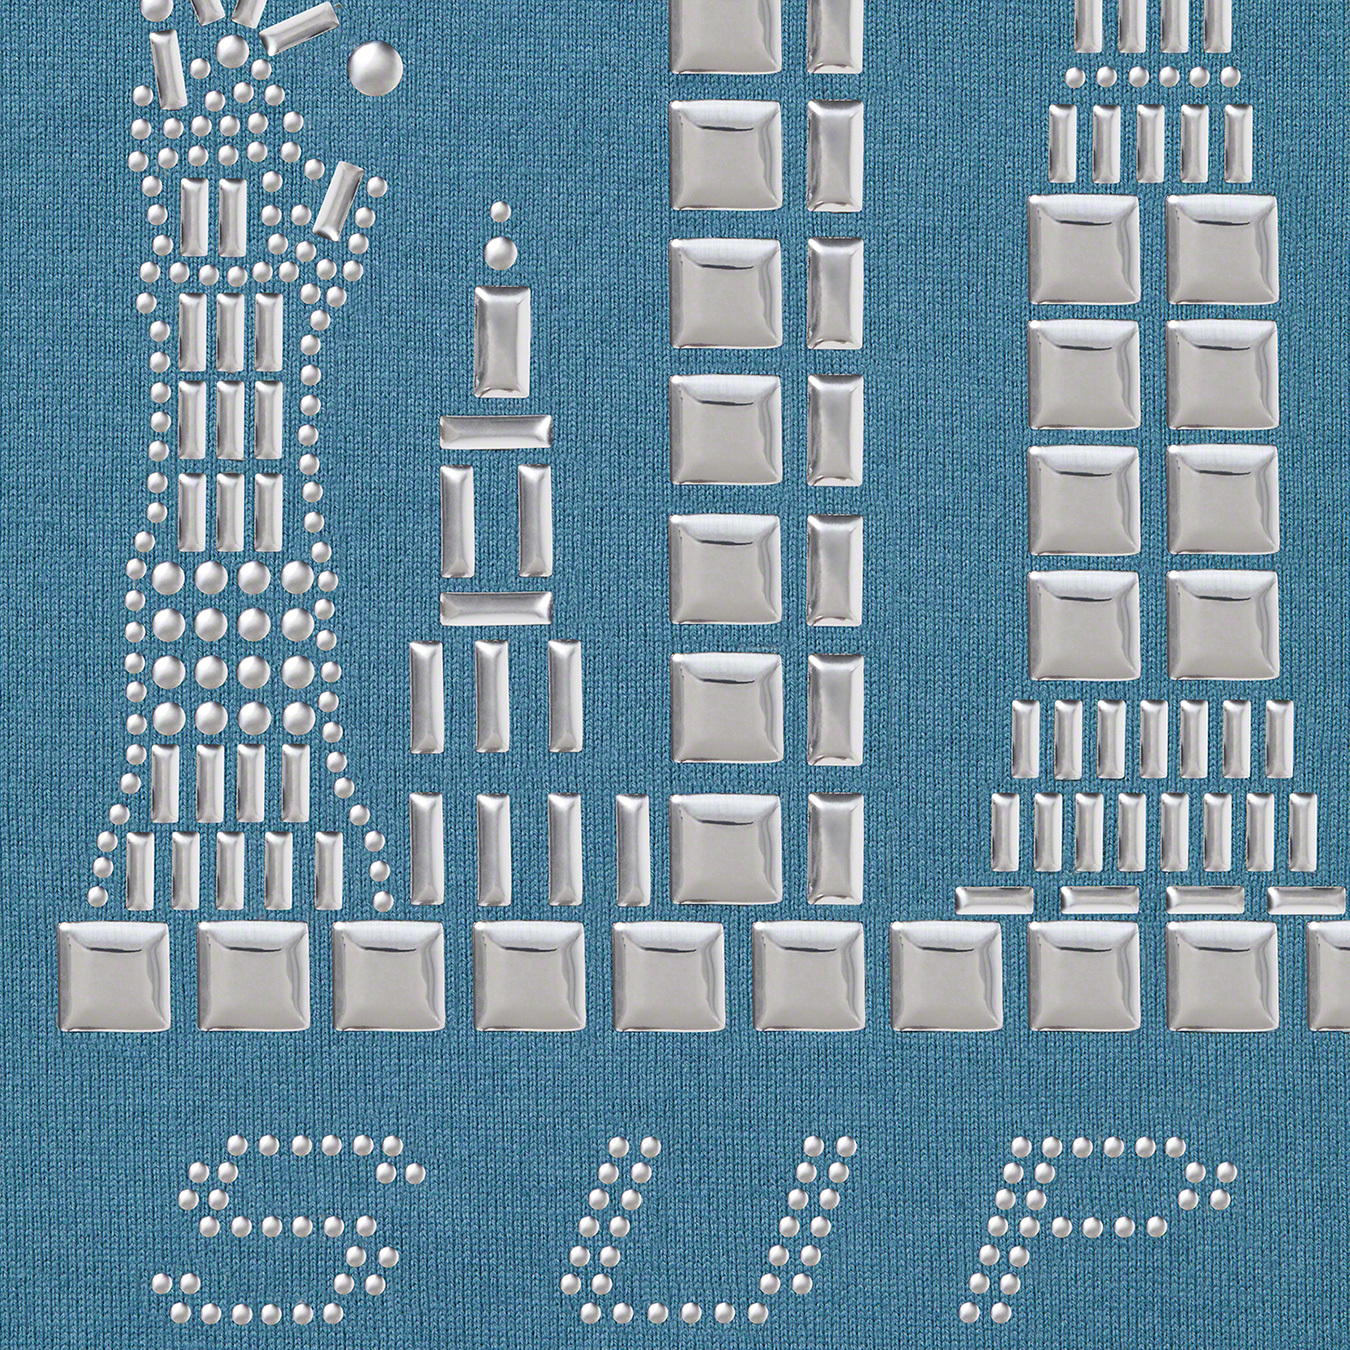 カテゴリ Supreme - Supreme Skyline S/S Top シュプリーム スカイラインの通販 by エース's shop